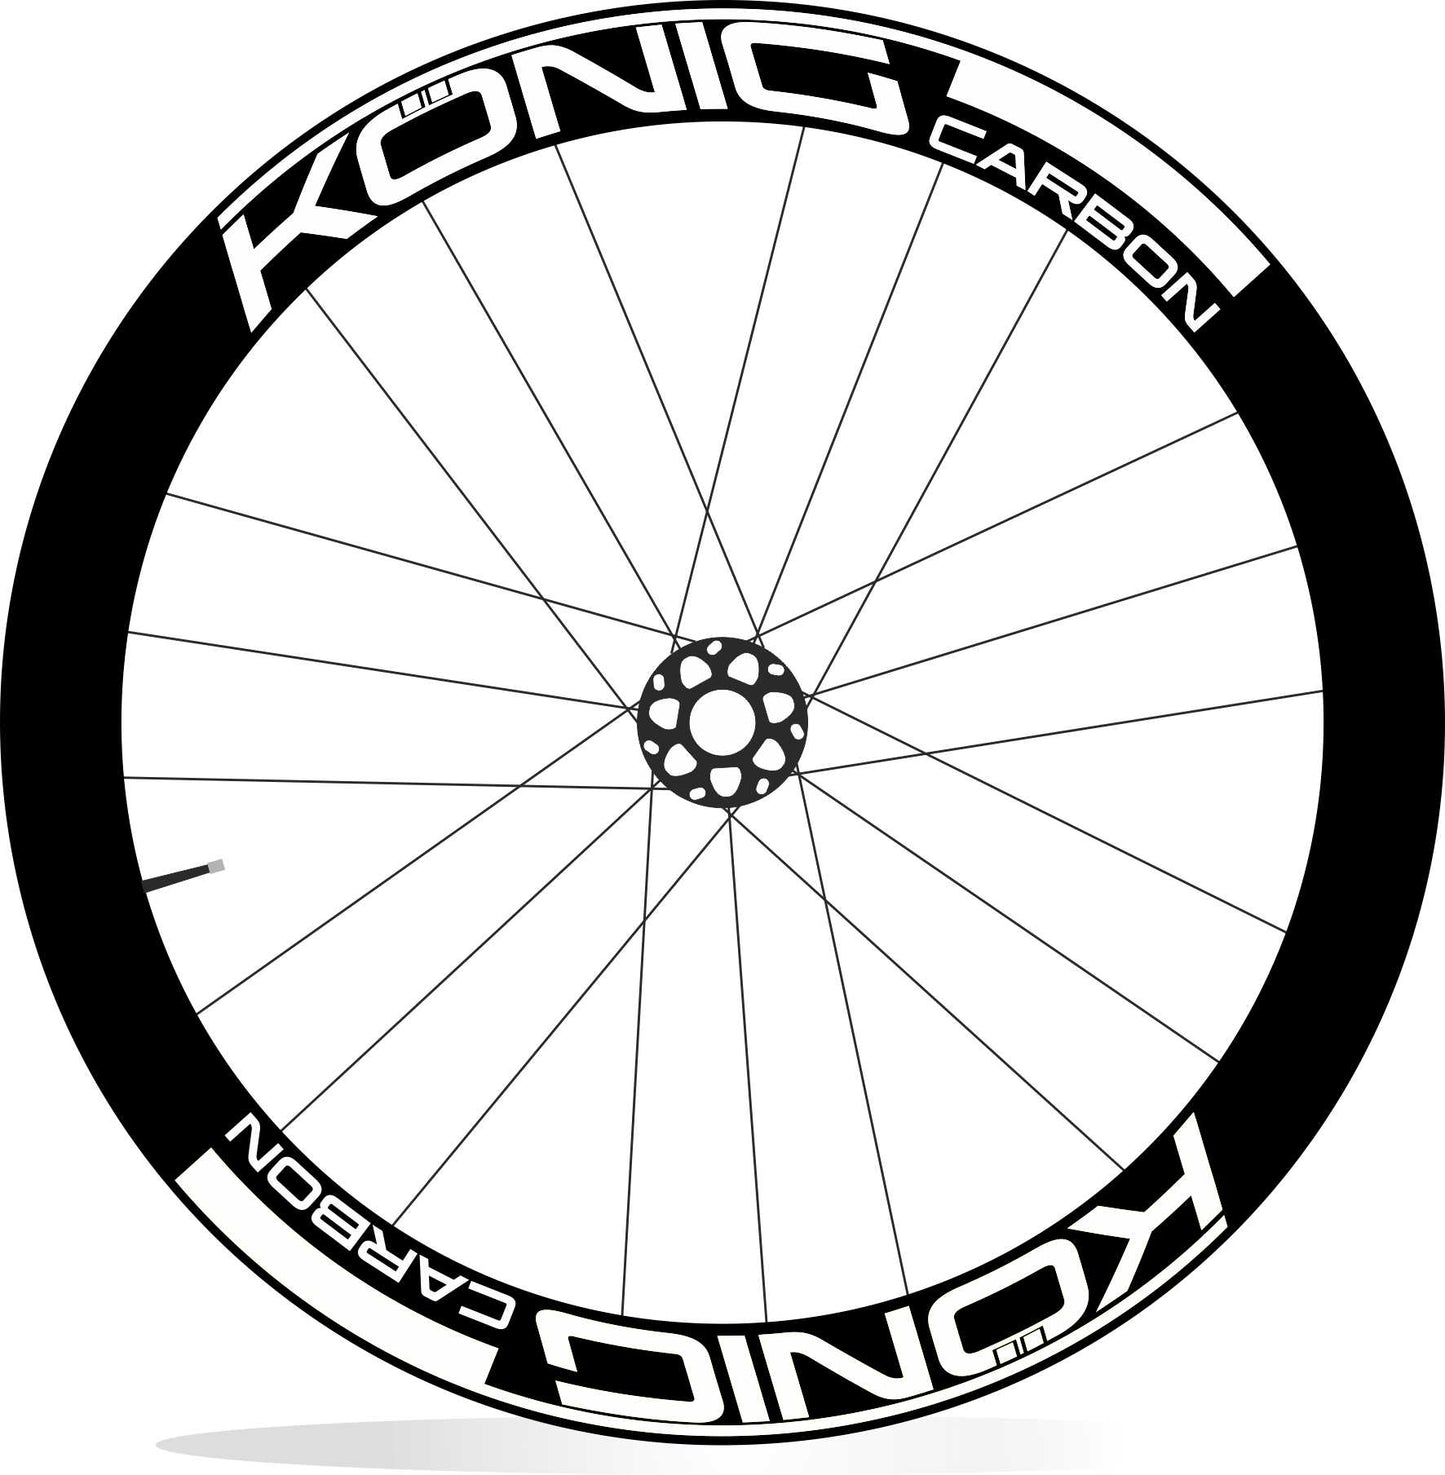 KONIG Carbon adesivi personalizzati per cerchi bici da corsa